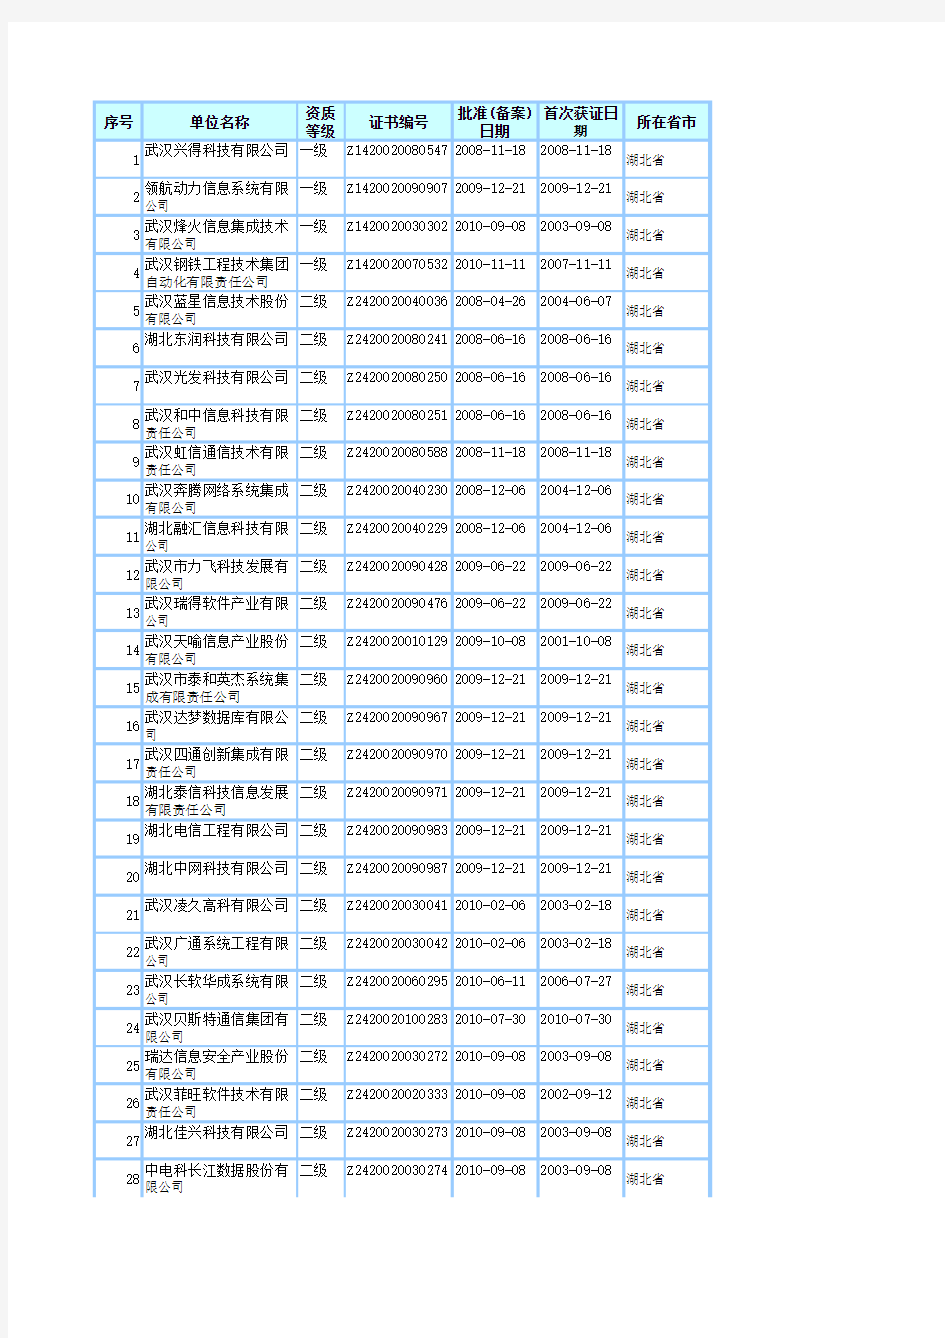 2011最新湖北省系统集成商名单